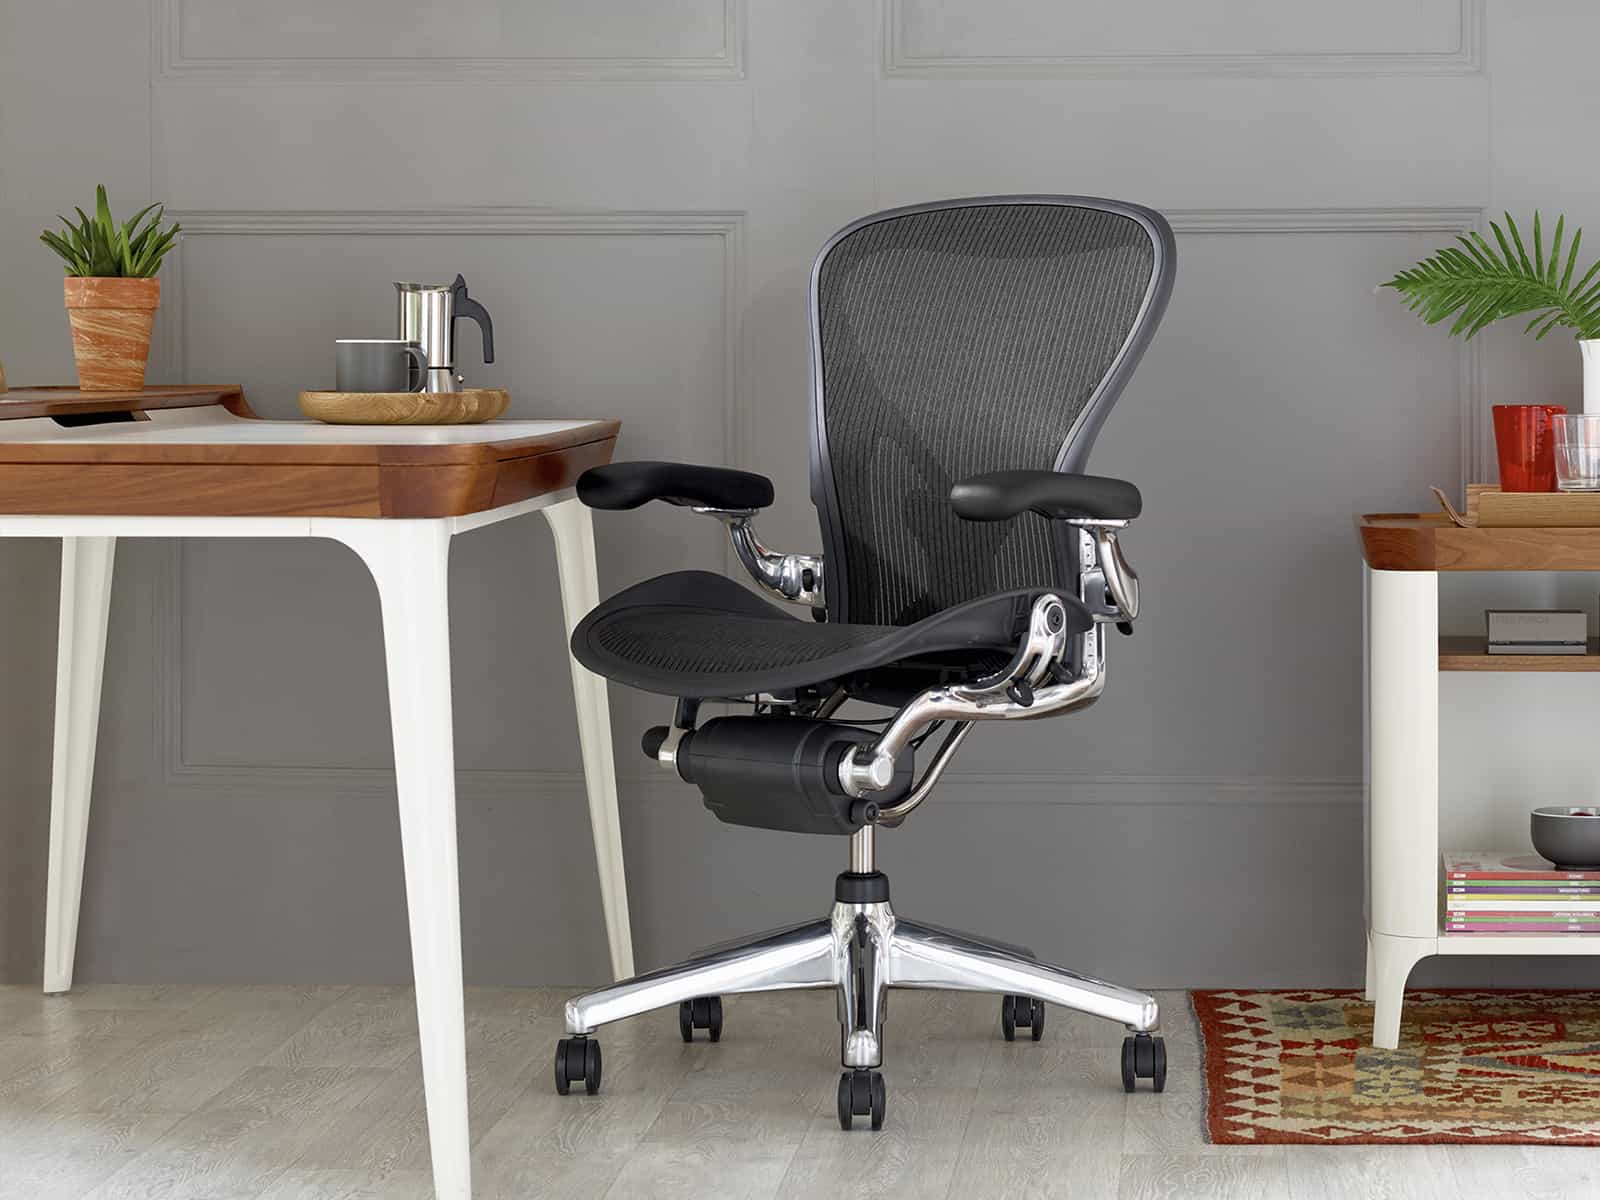 L’Excellence Incarnée : La Chaise Herman Miller Aeron, une Synthèse Parfaite de Confort, Durabilité et Esthétique